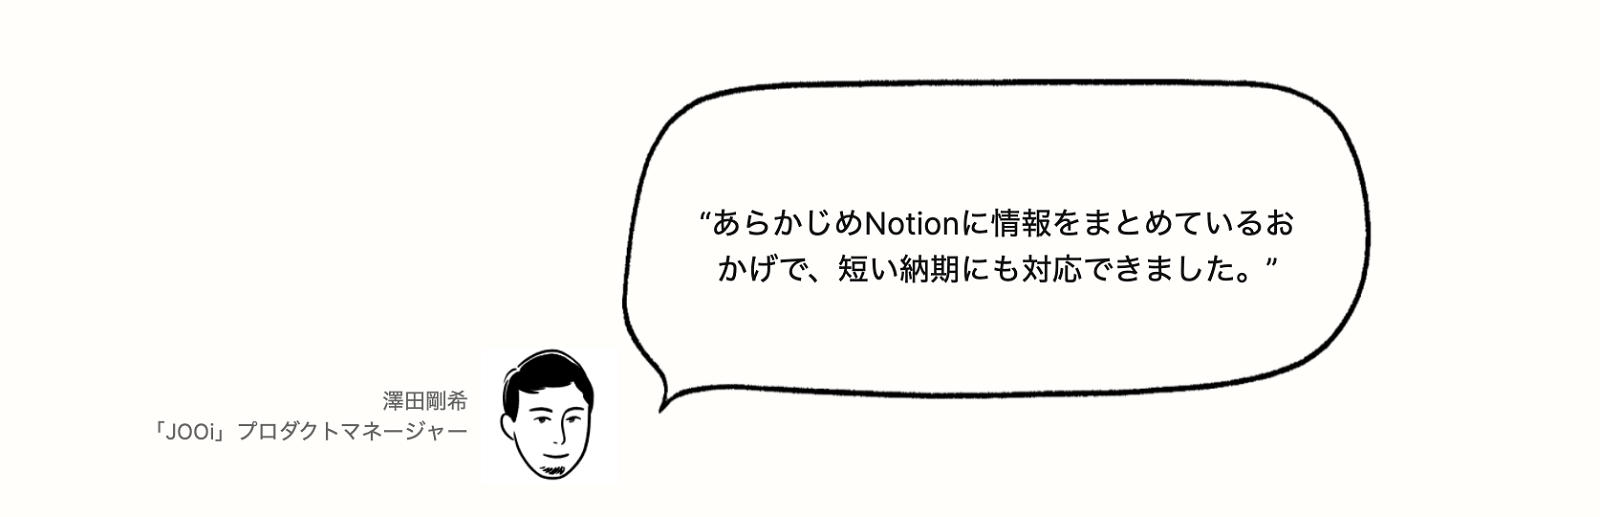 notion image